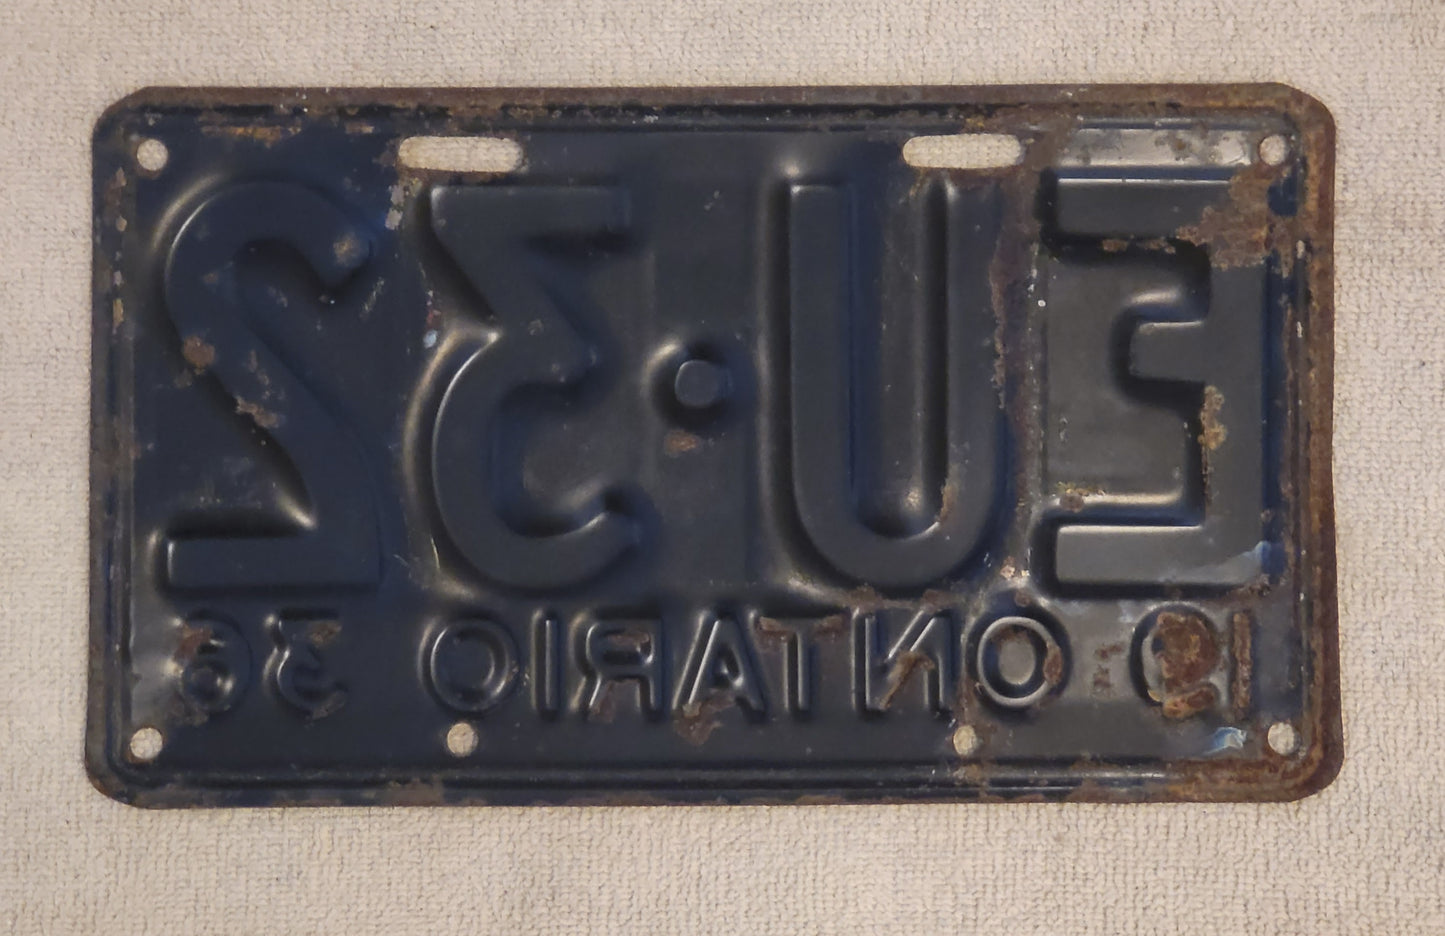 1936 Ontario Canada License Plate # EU-32 Single 4 Digit Original